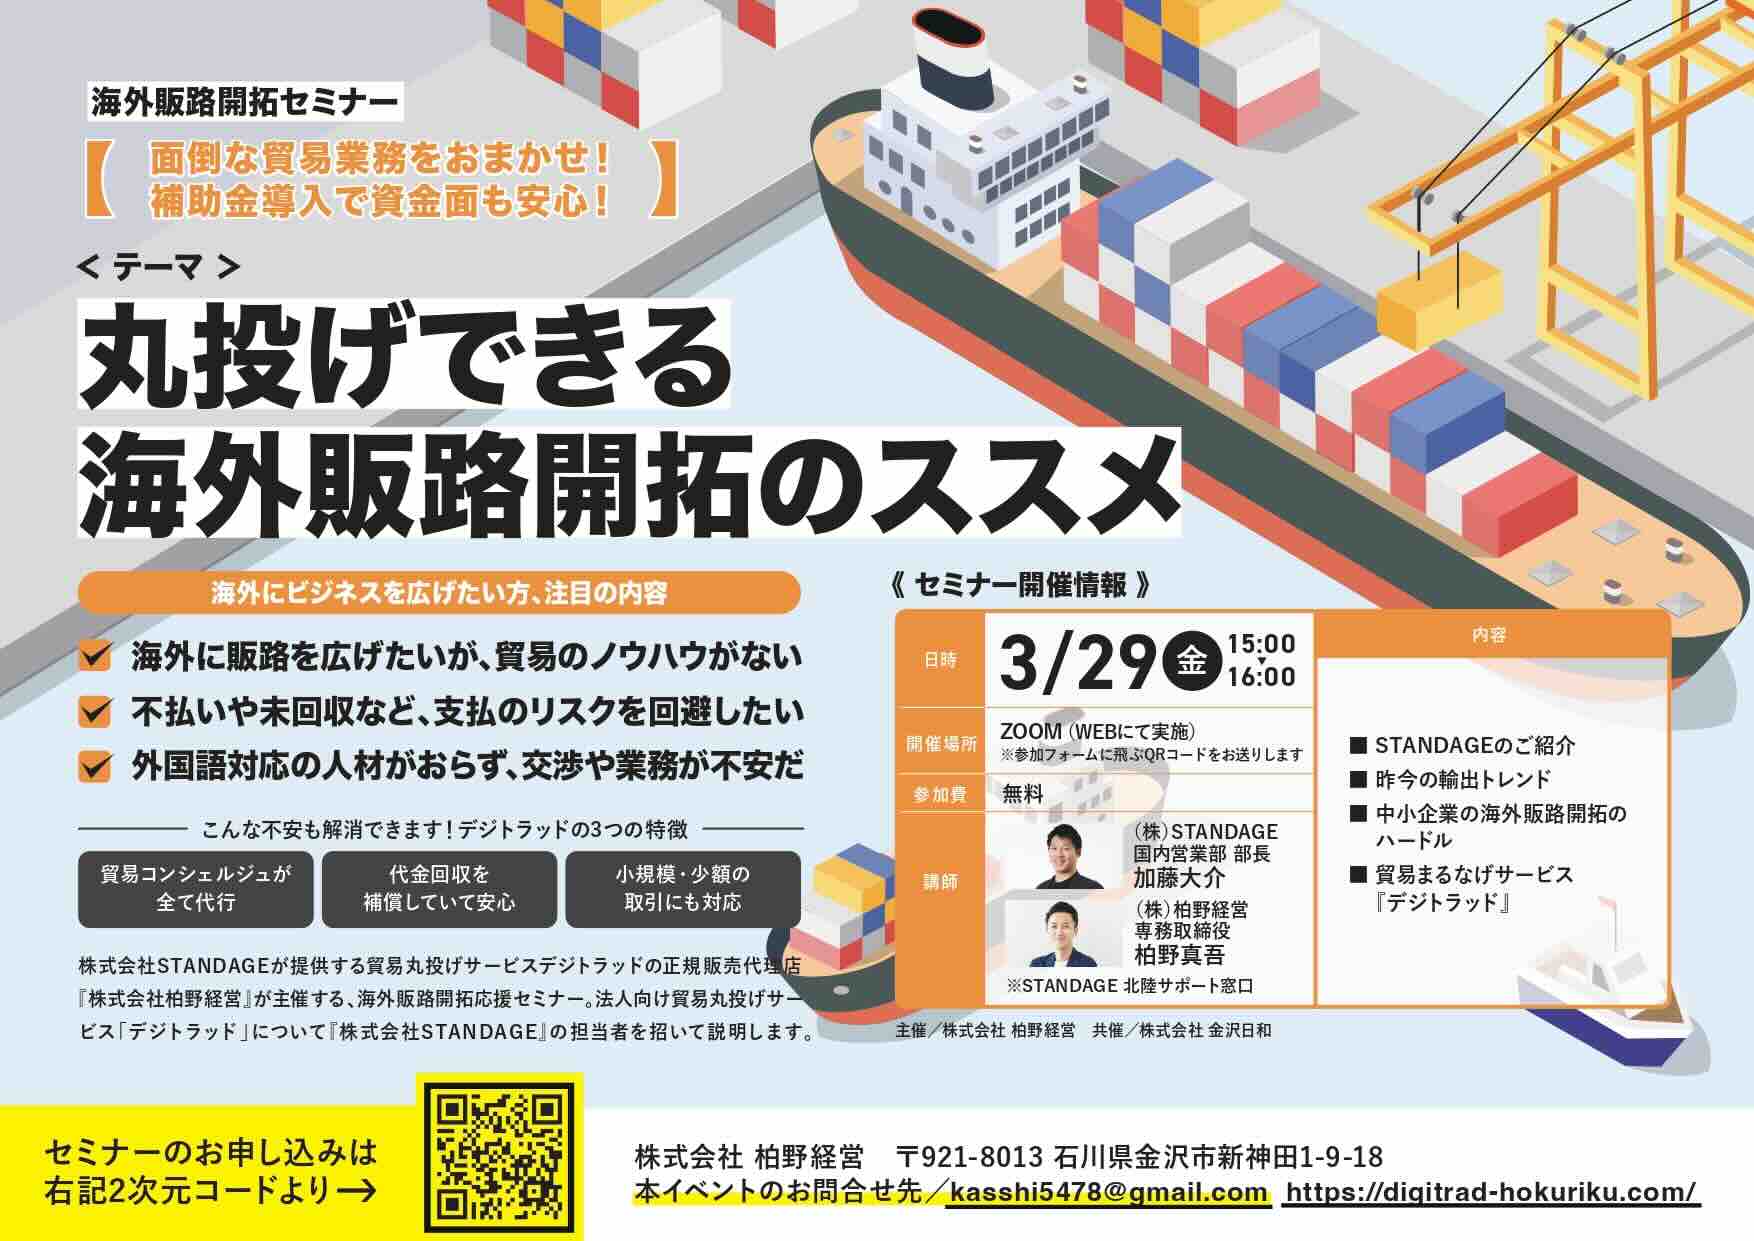 【参加者募集】貿易業務を丸ごとおまかせ！海外販路開拓セミナーを3/29(金)にオンラインにて開催。